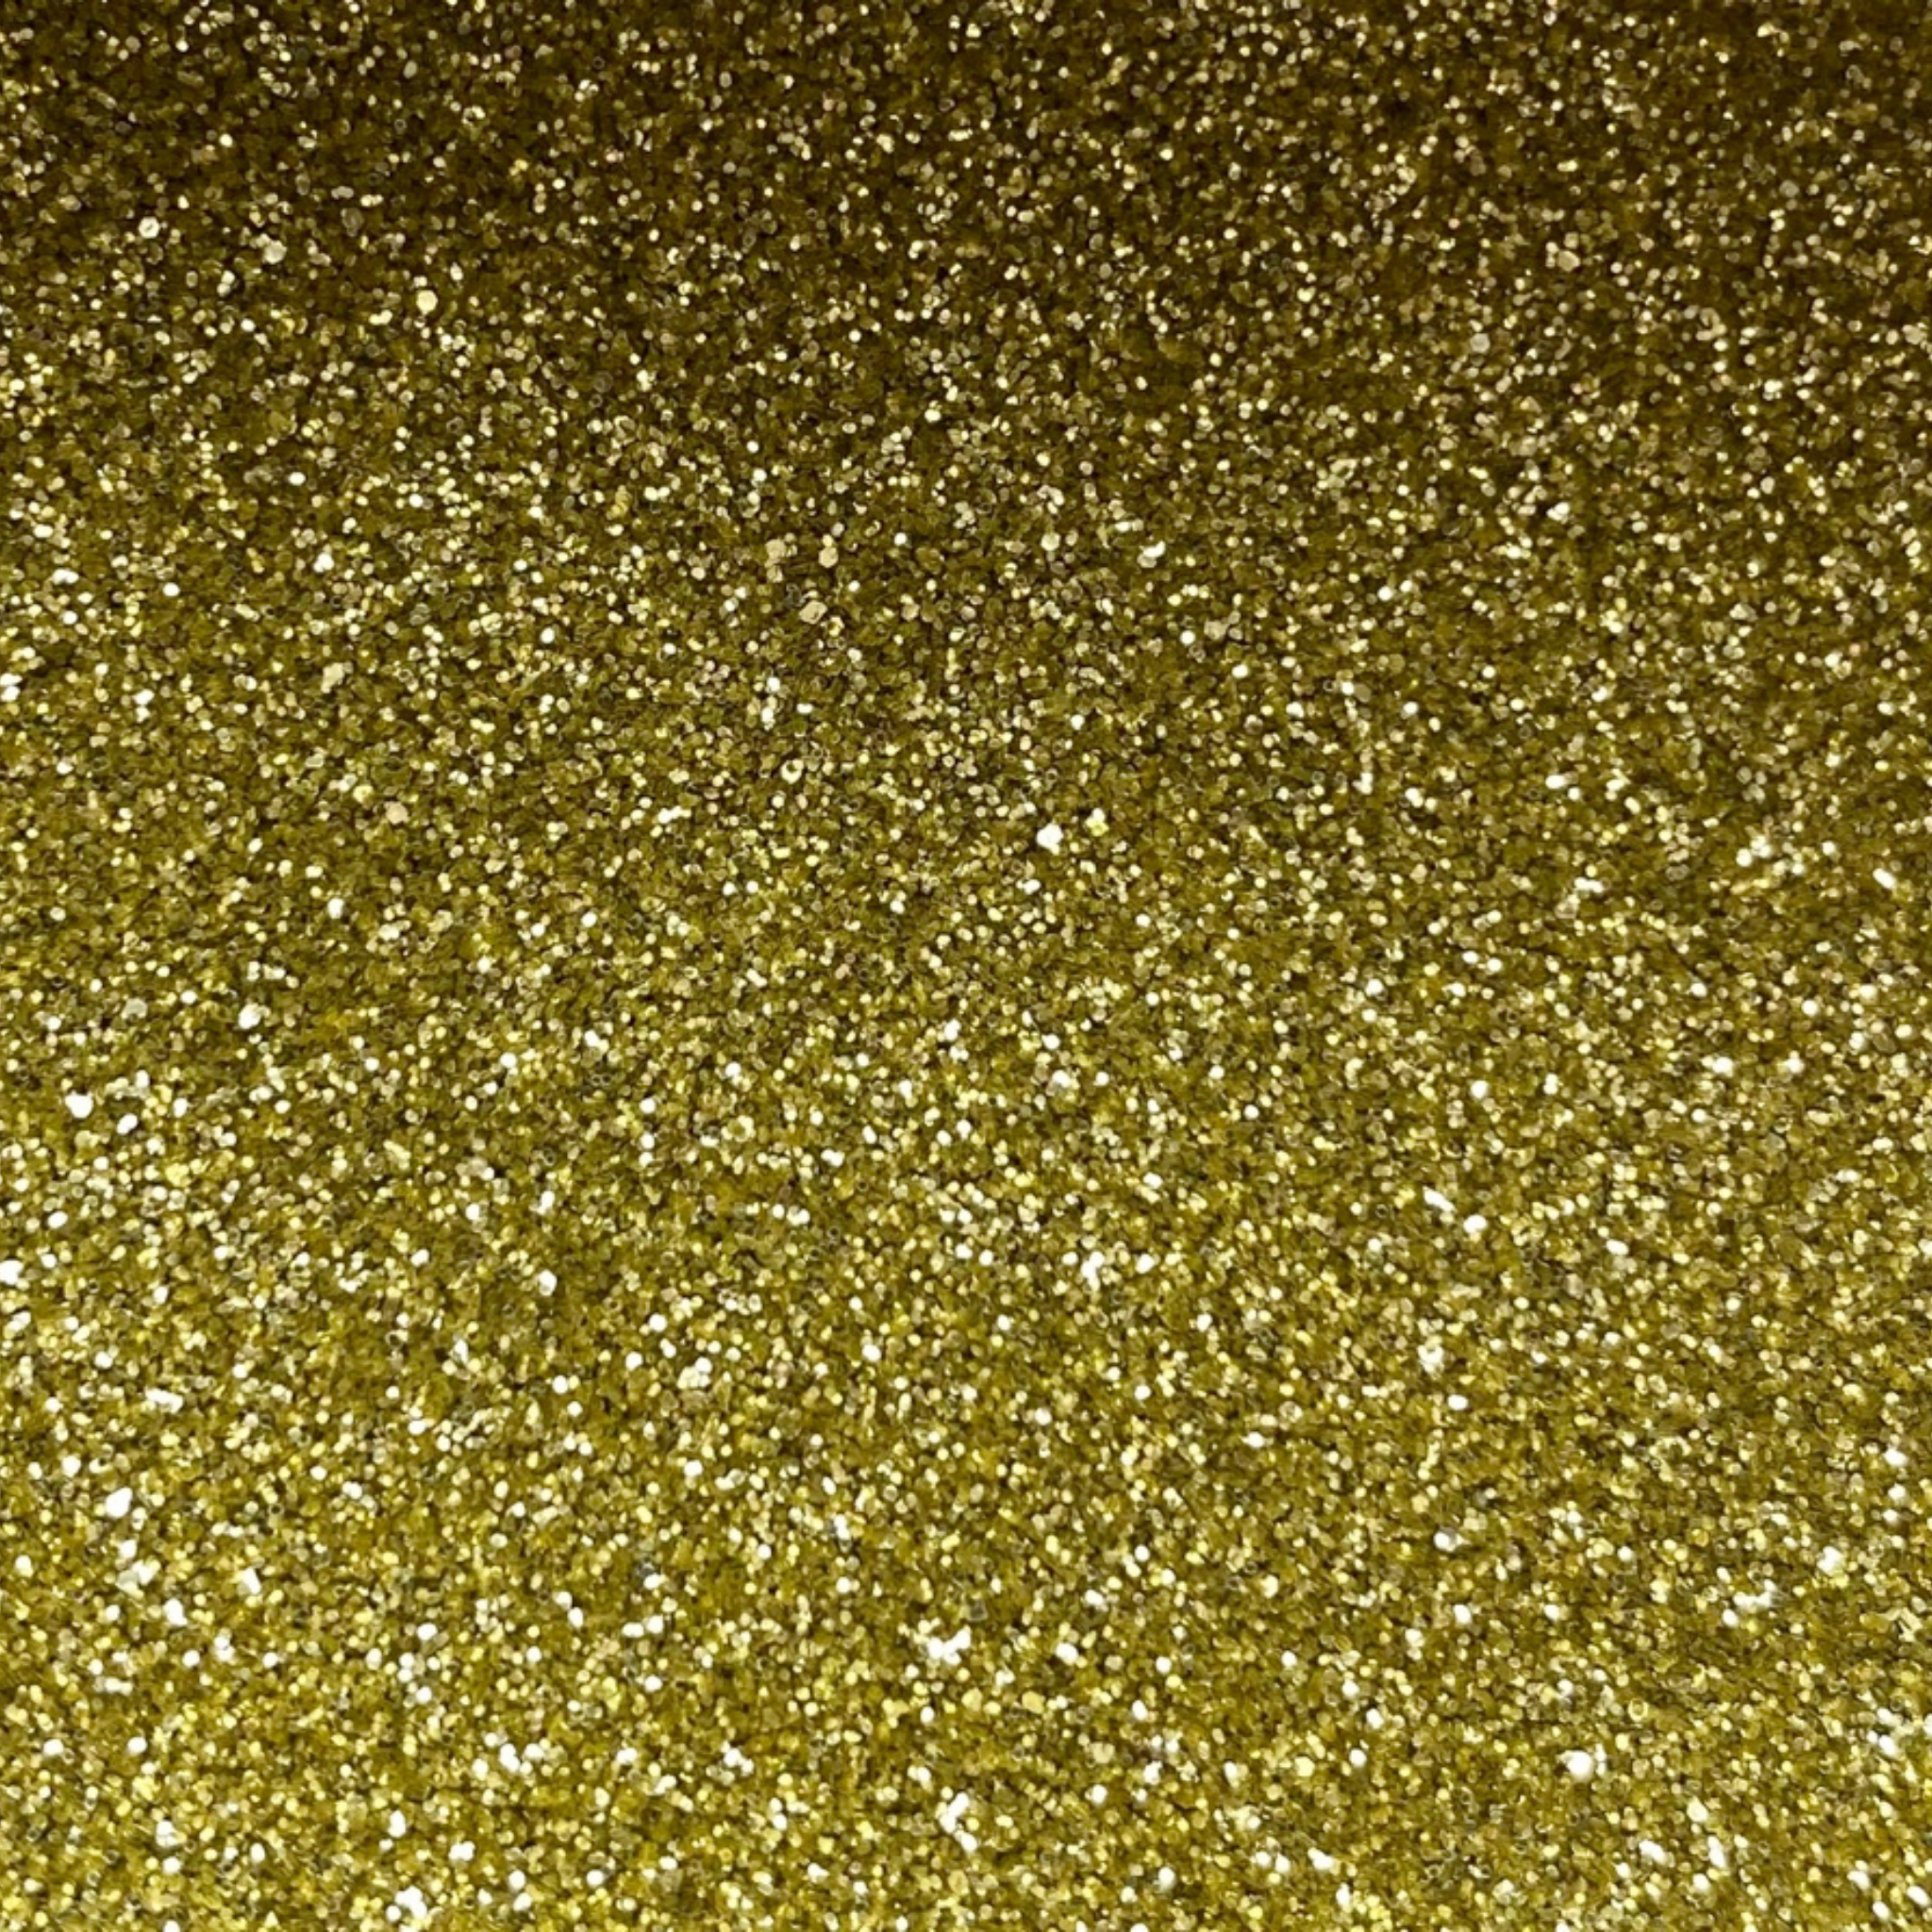 Fine gold cosmetic eco friendly glitter